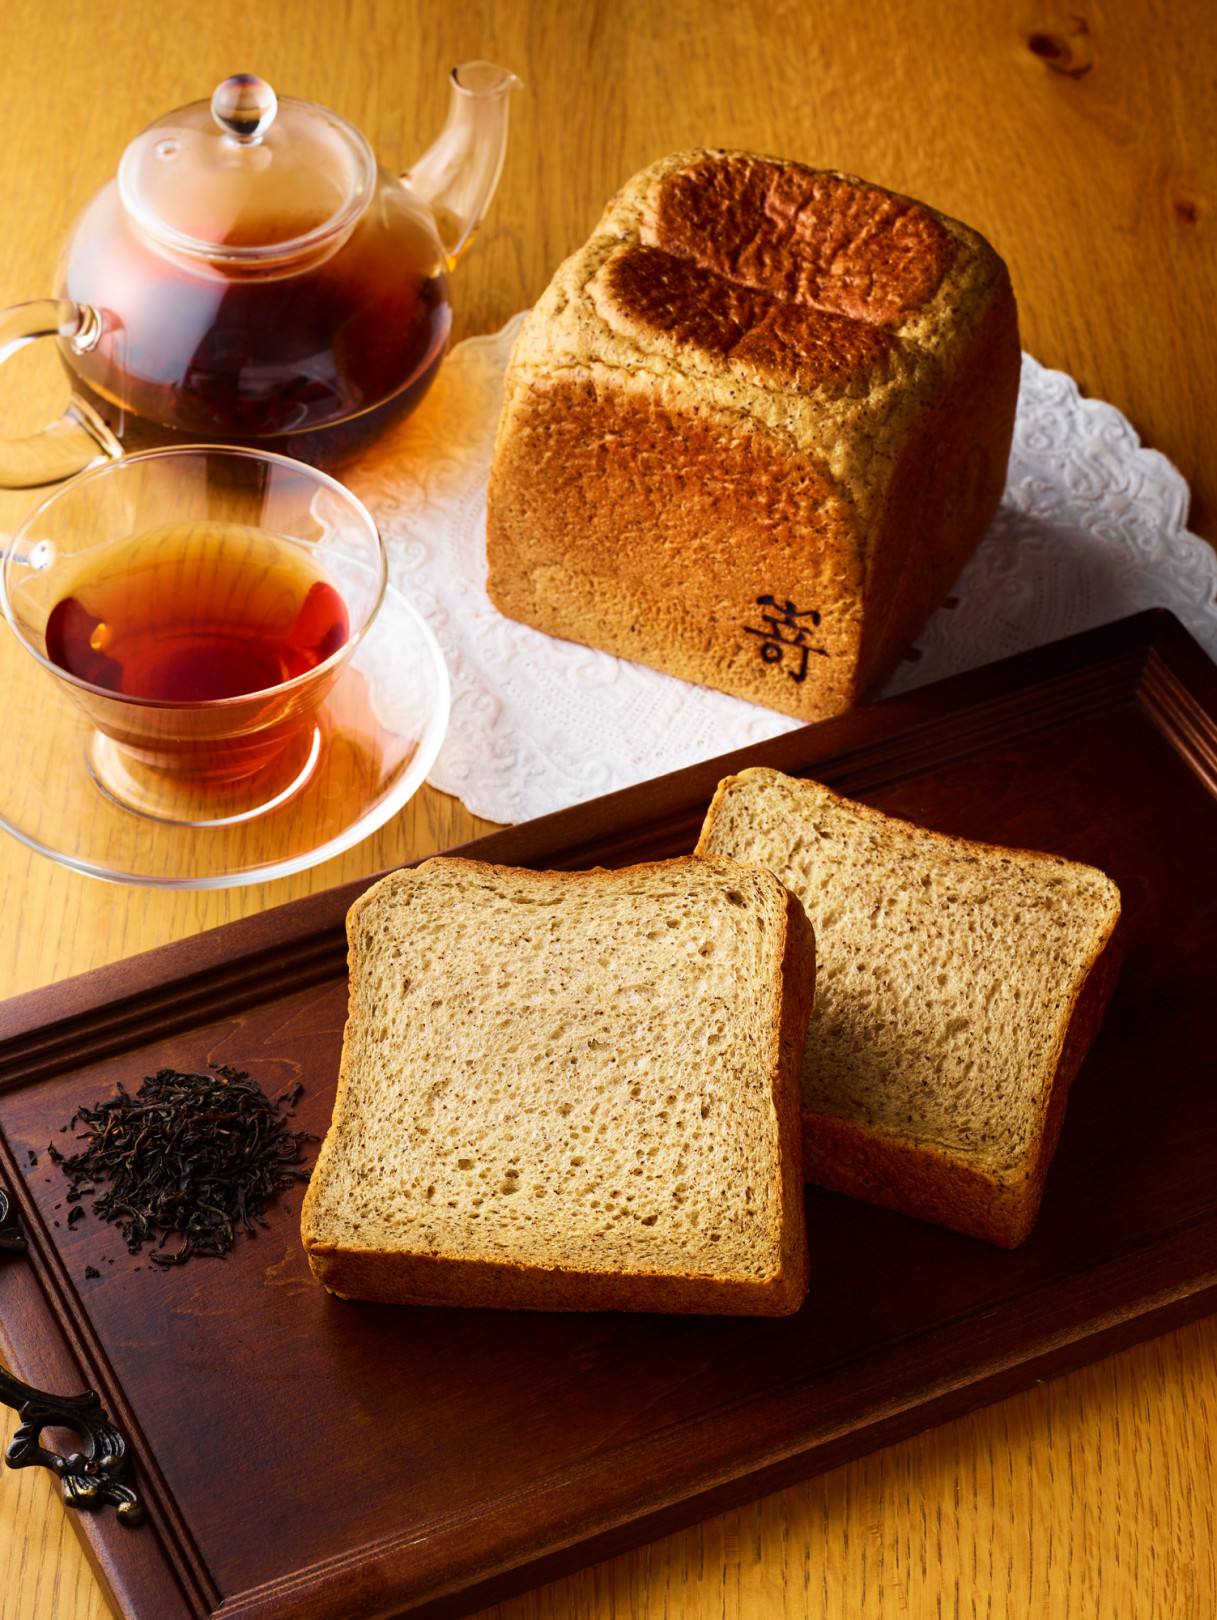 高級食パン専門店・嵜本から、4日間だけ限定発売される「ダージリン薫る紅茶の食パン」が気になる!